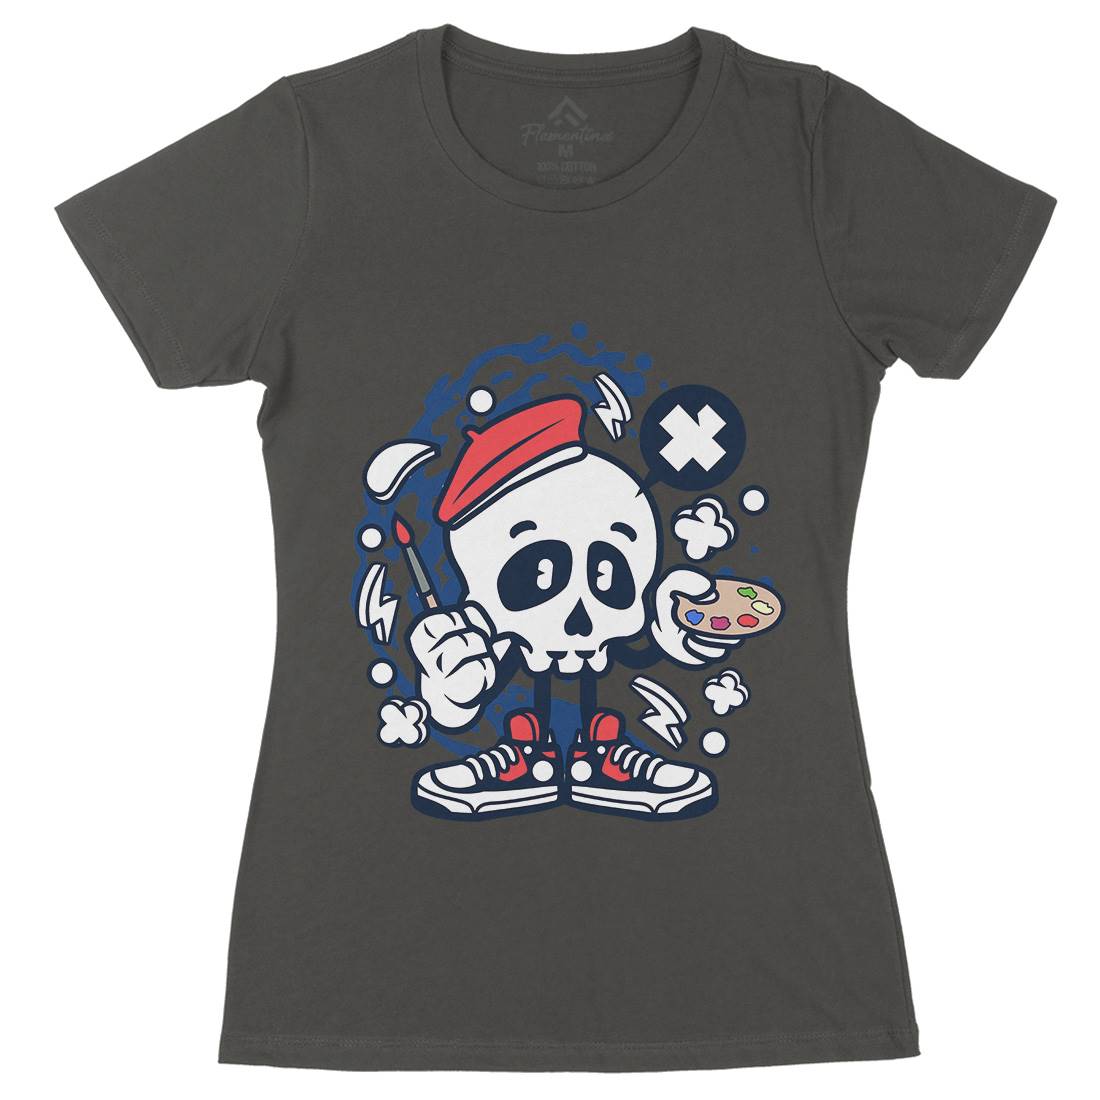 Painter Skull Womens Organic Crew Neck T-Shirt Retro C183